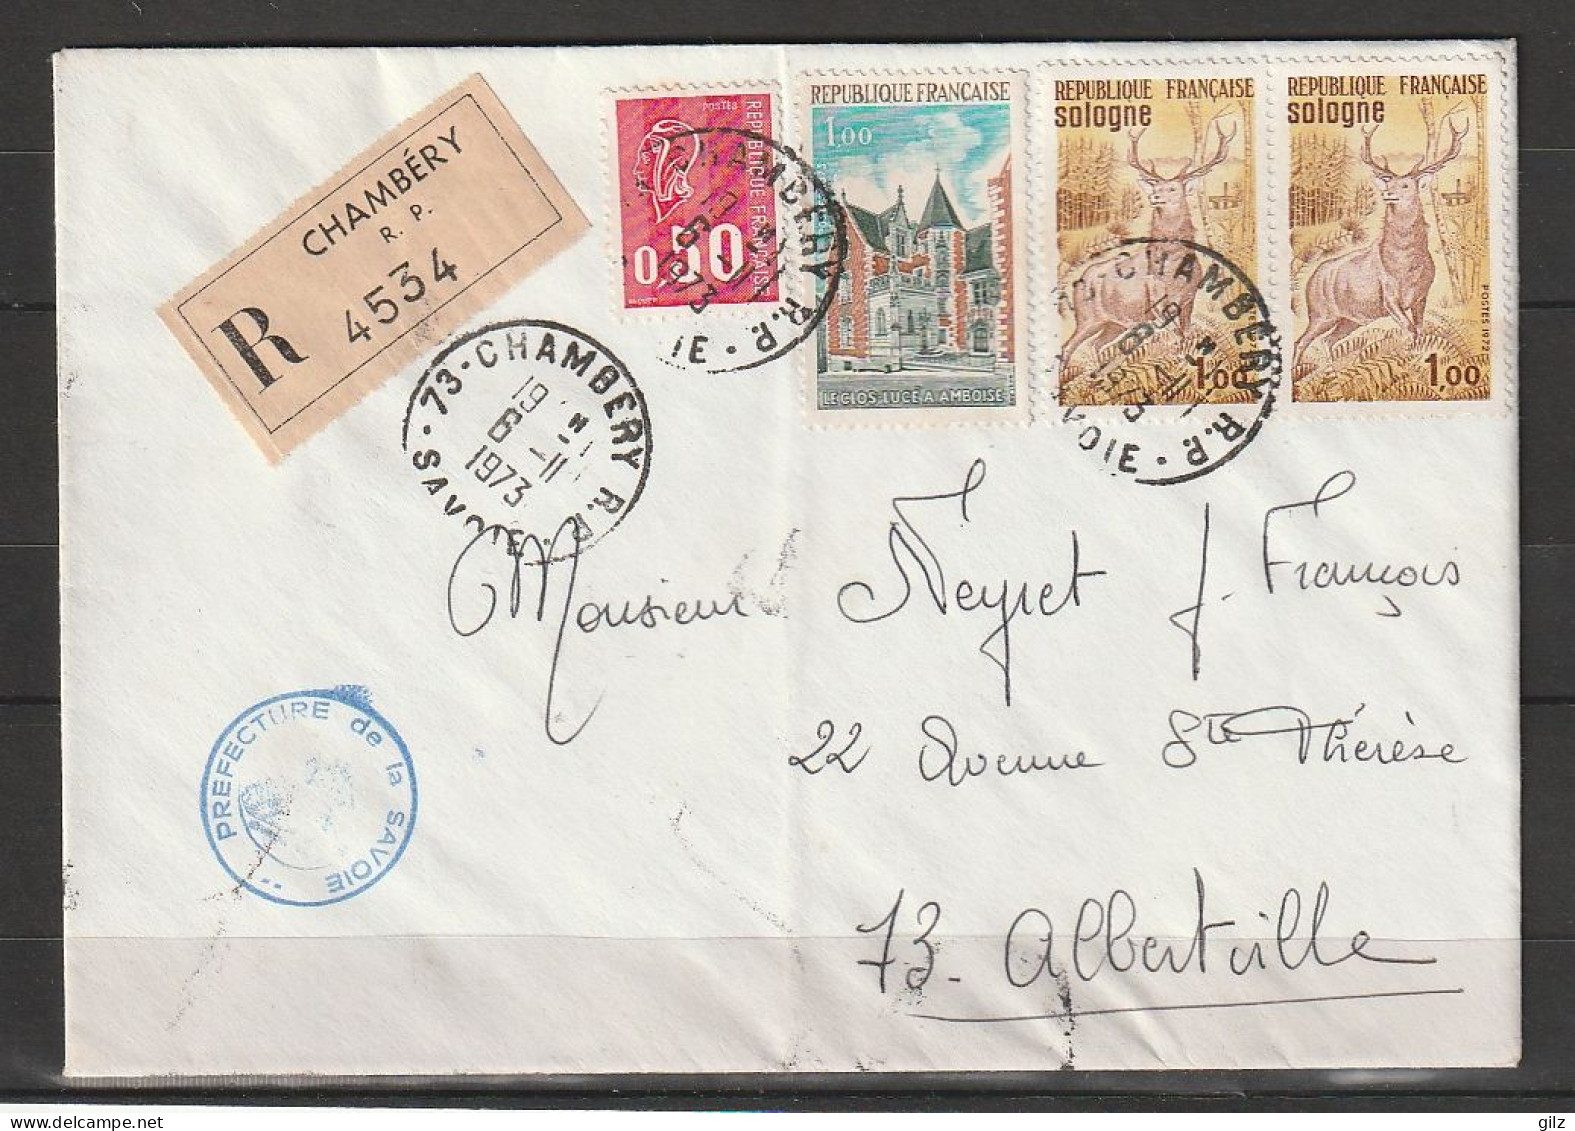 Lettre RECOMMANDEE De Chambéry Du6.11.1973 Affranchie Avec 4 Timbres - Lettres & Documents